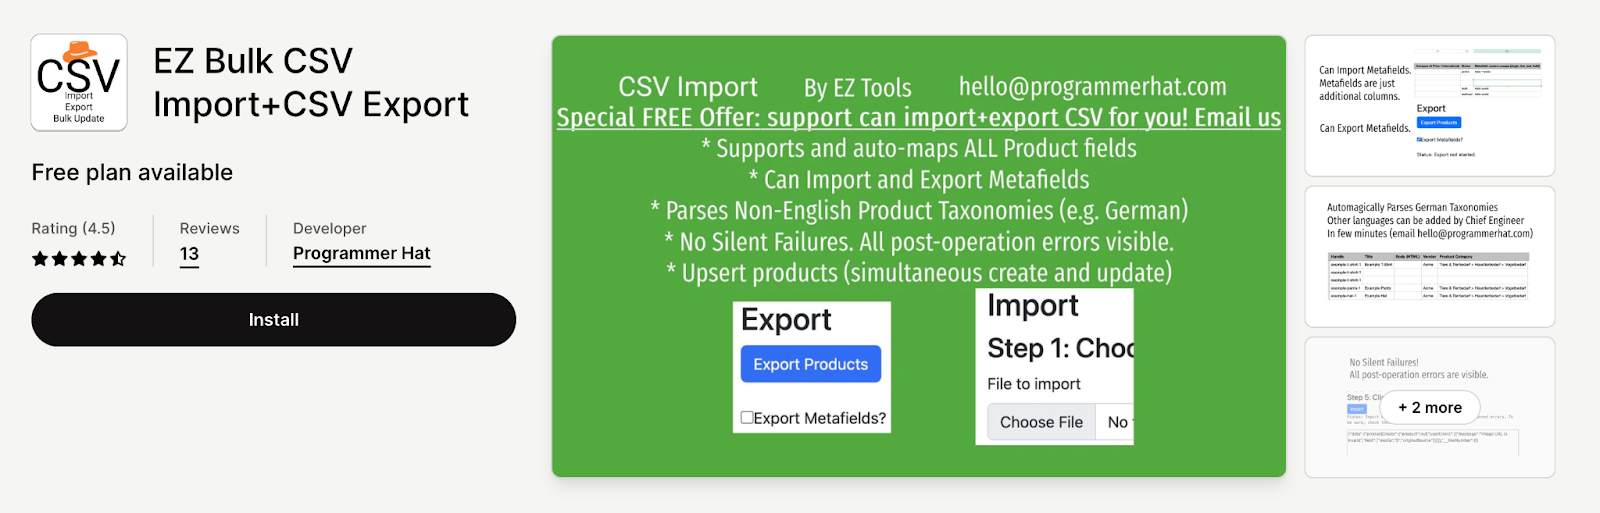 EZ Bulk CSV Import+CSV Export 